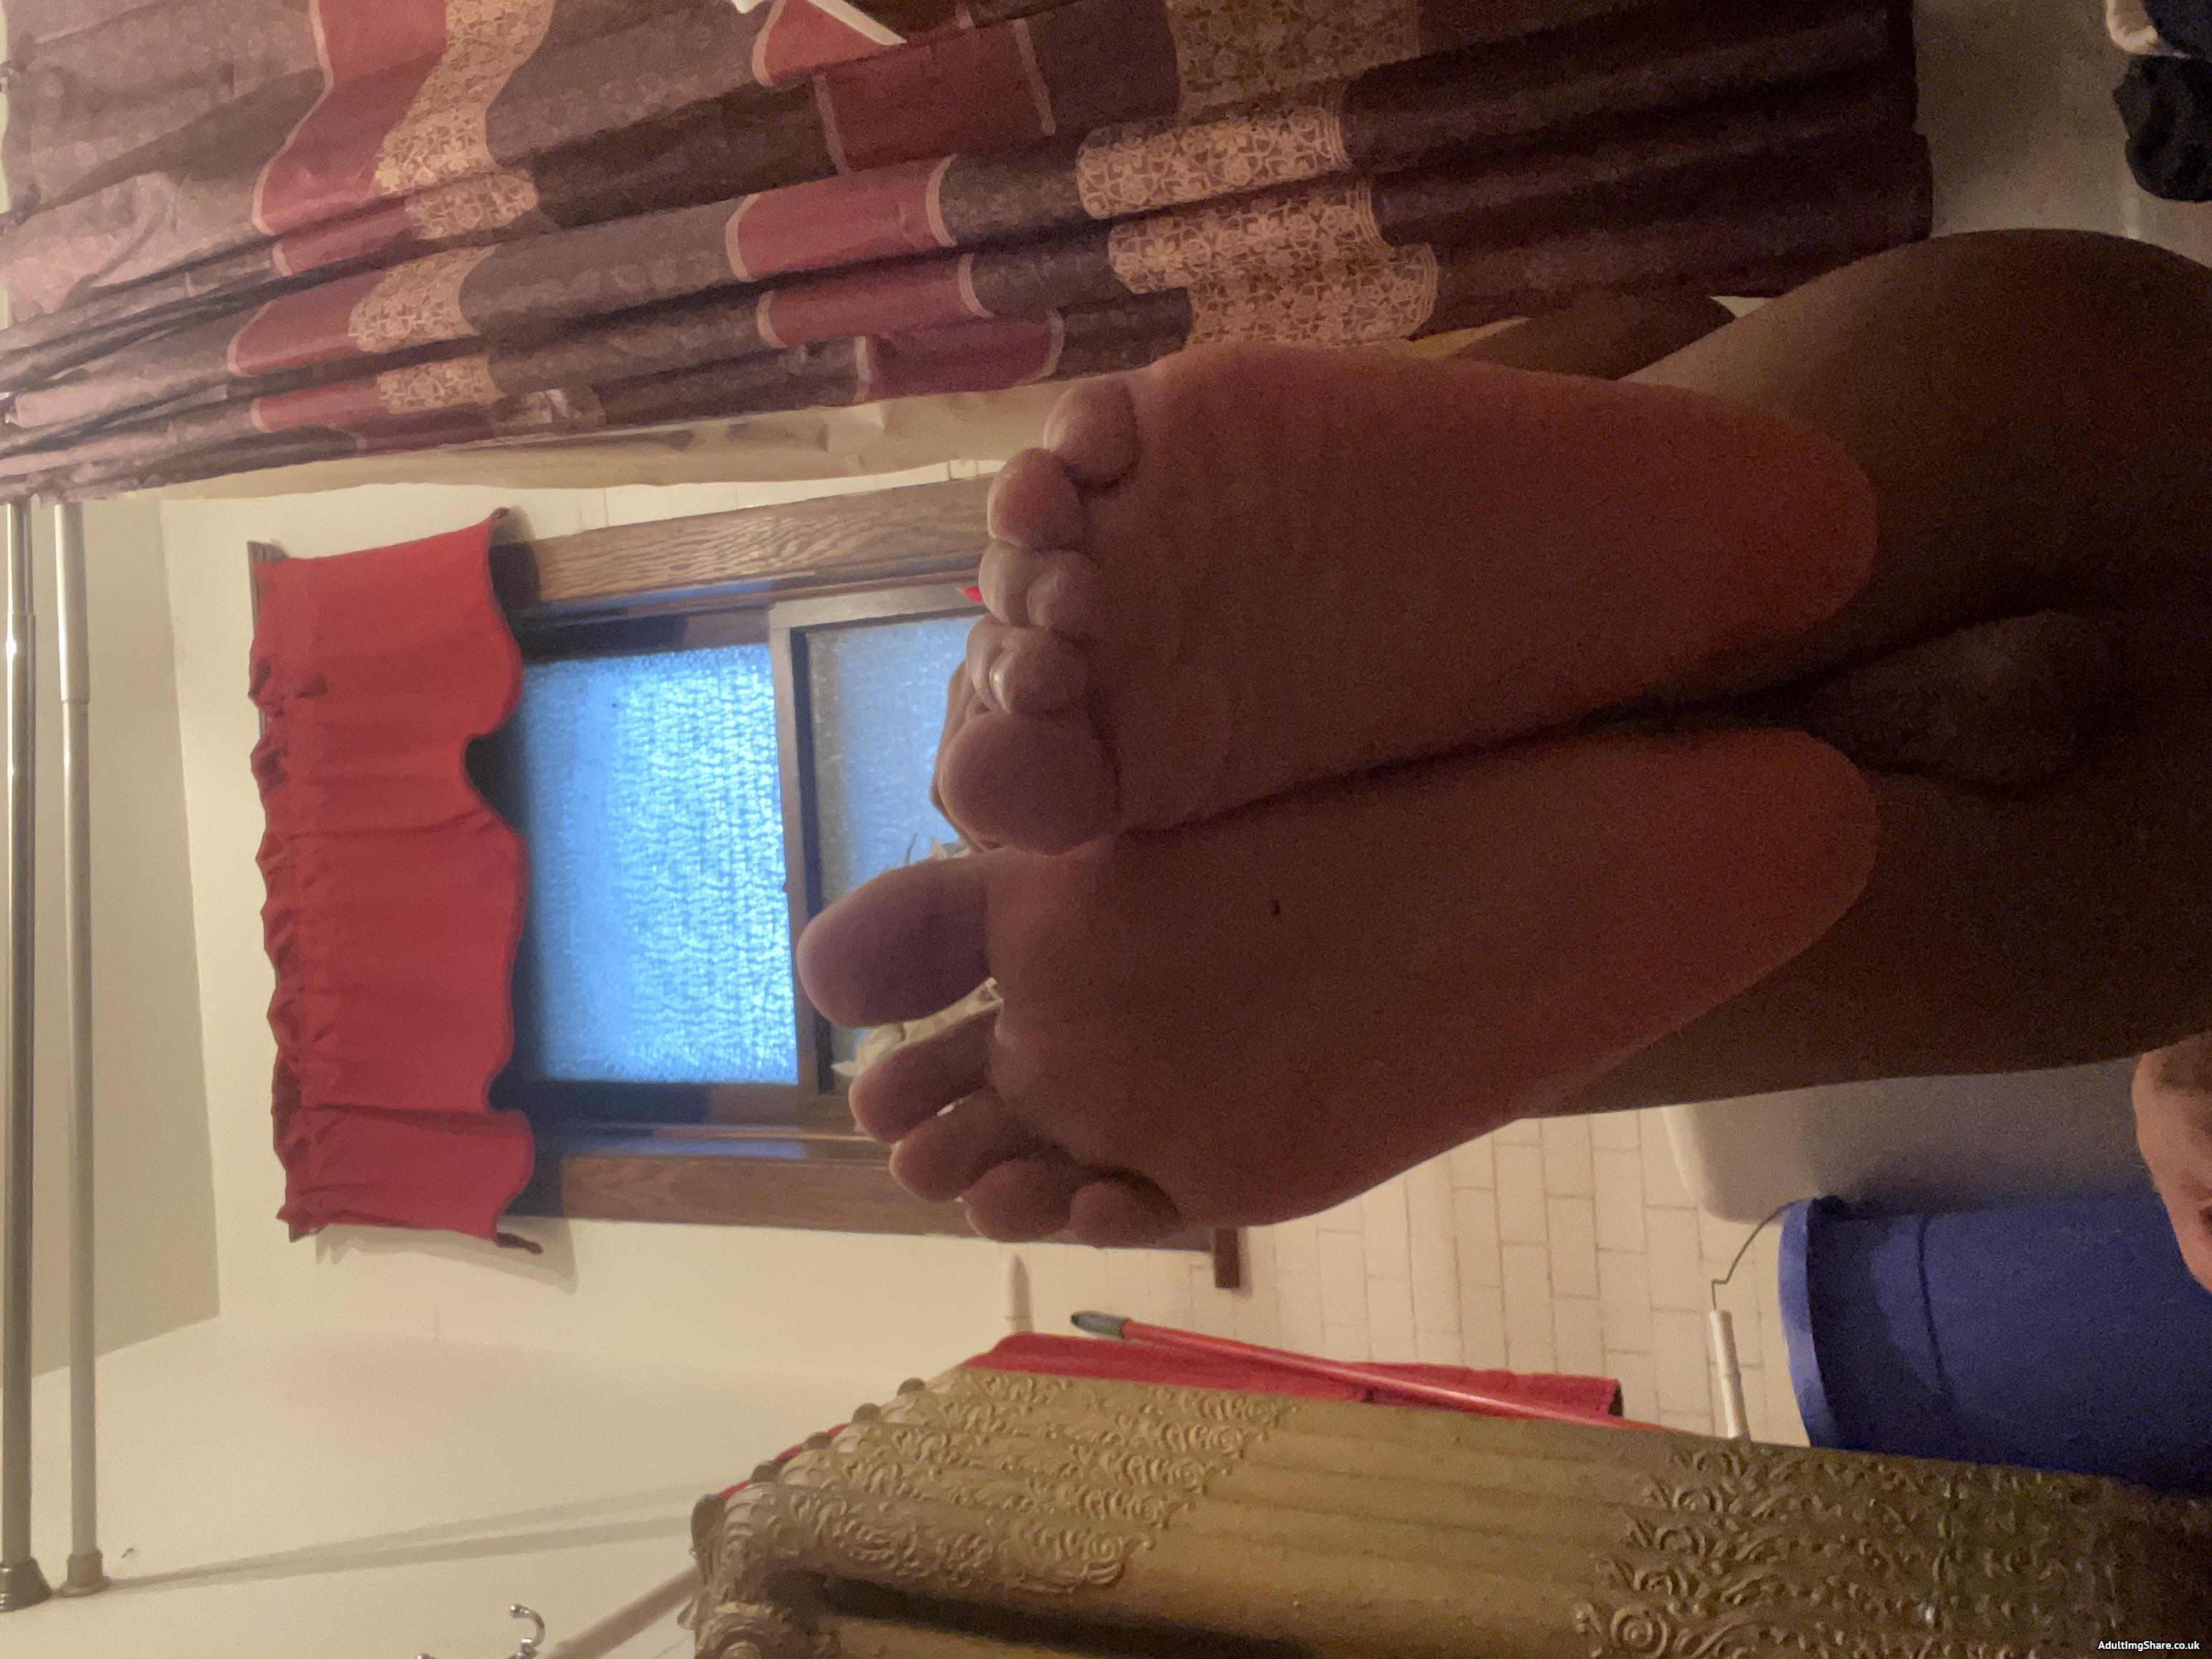 Stinky sweaty and smelly feet ????????